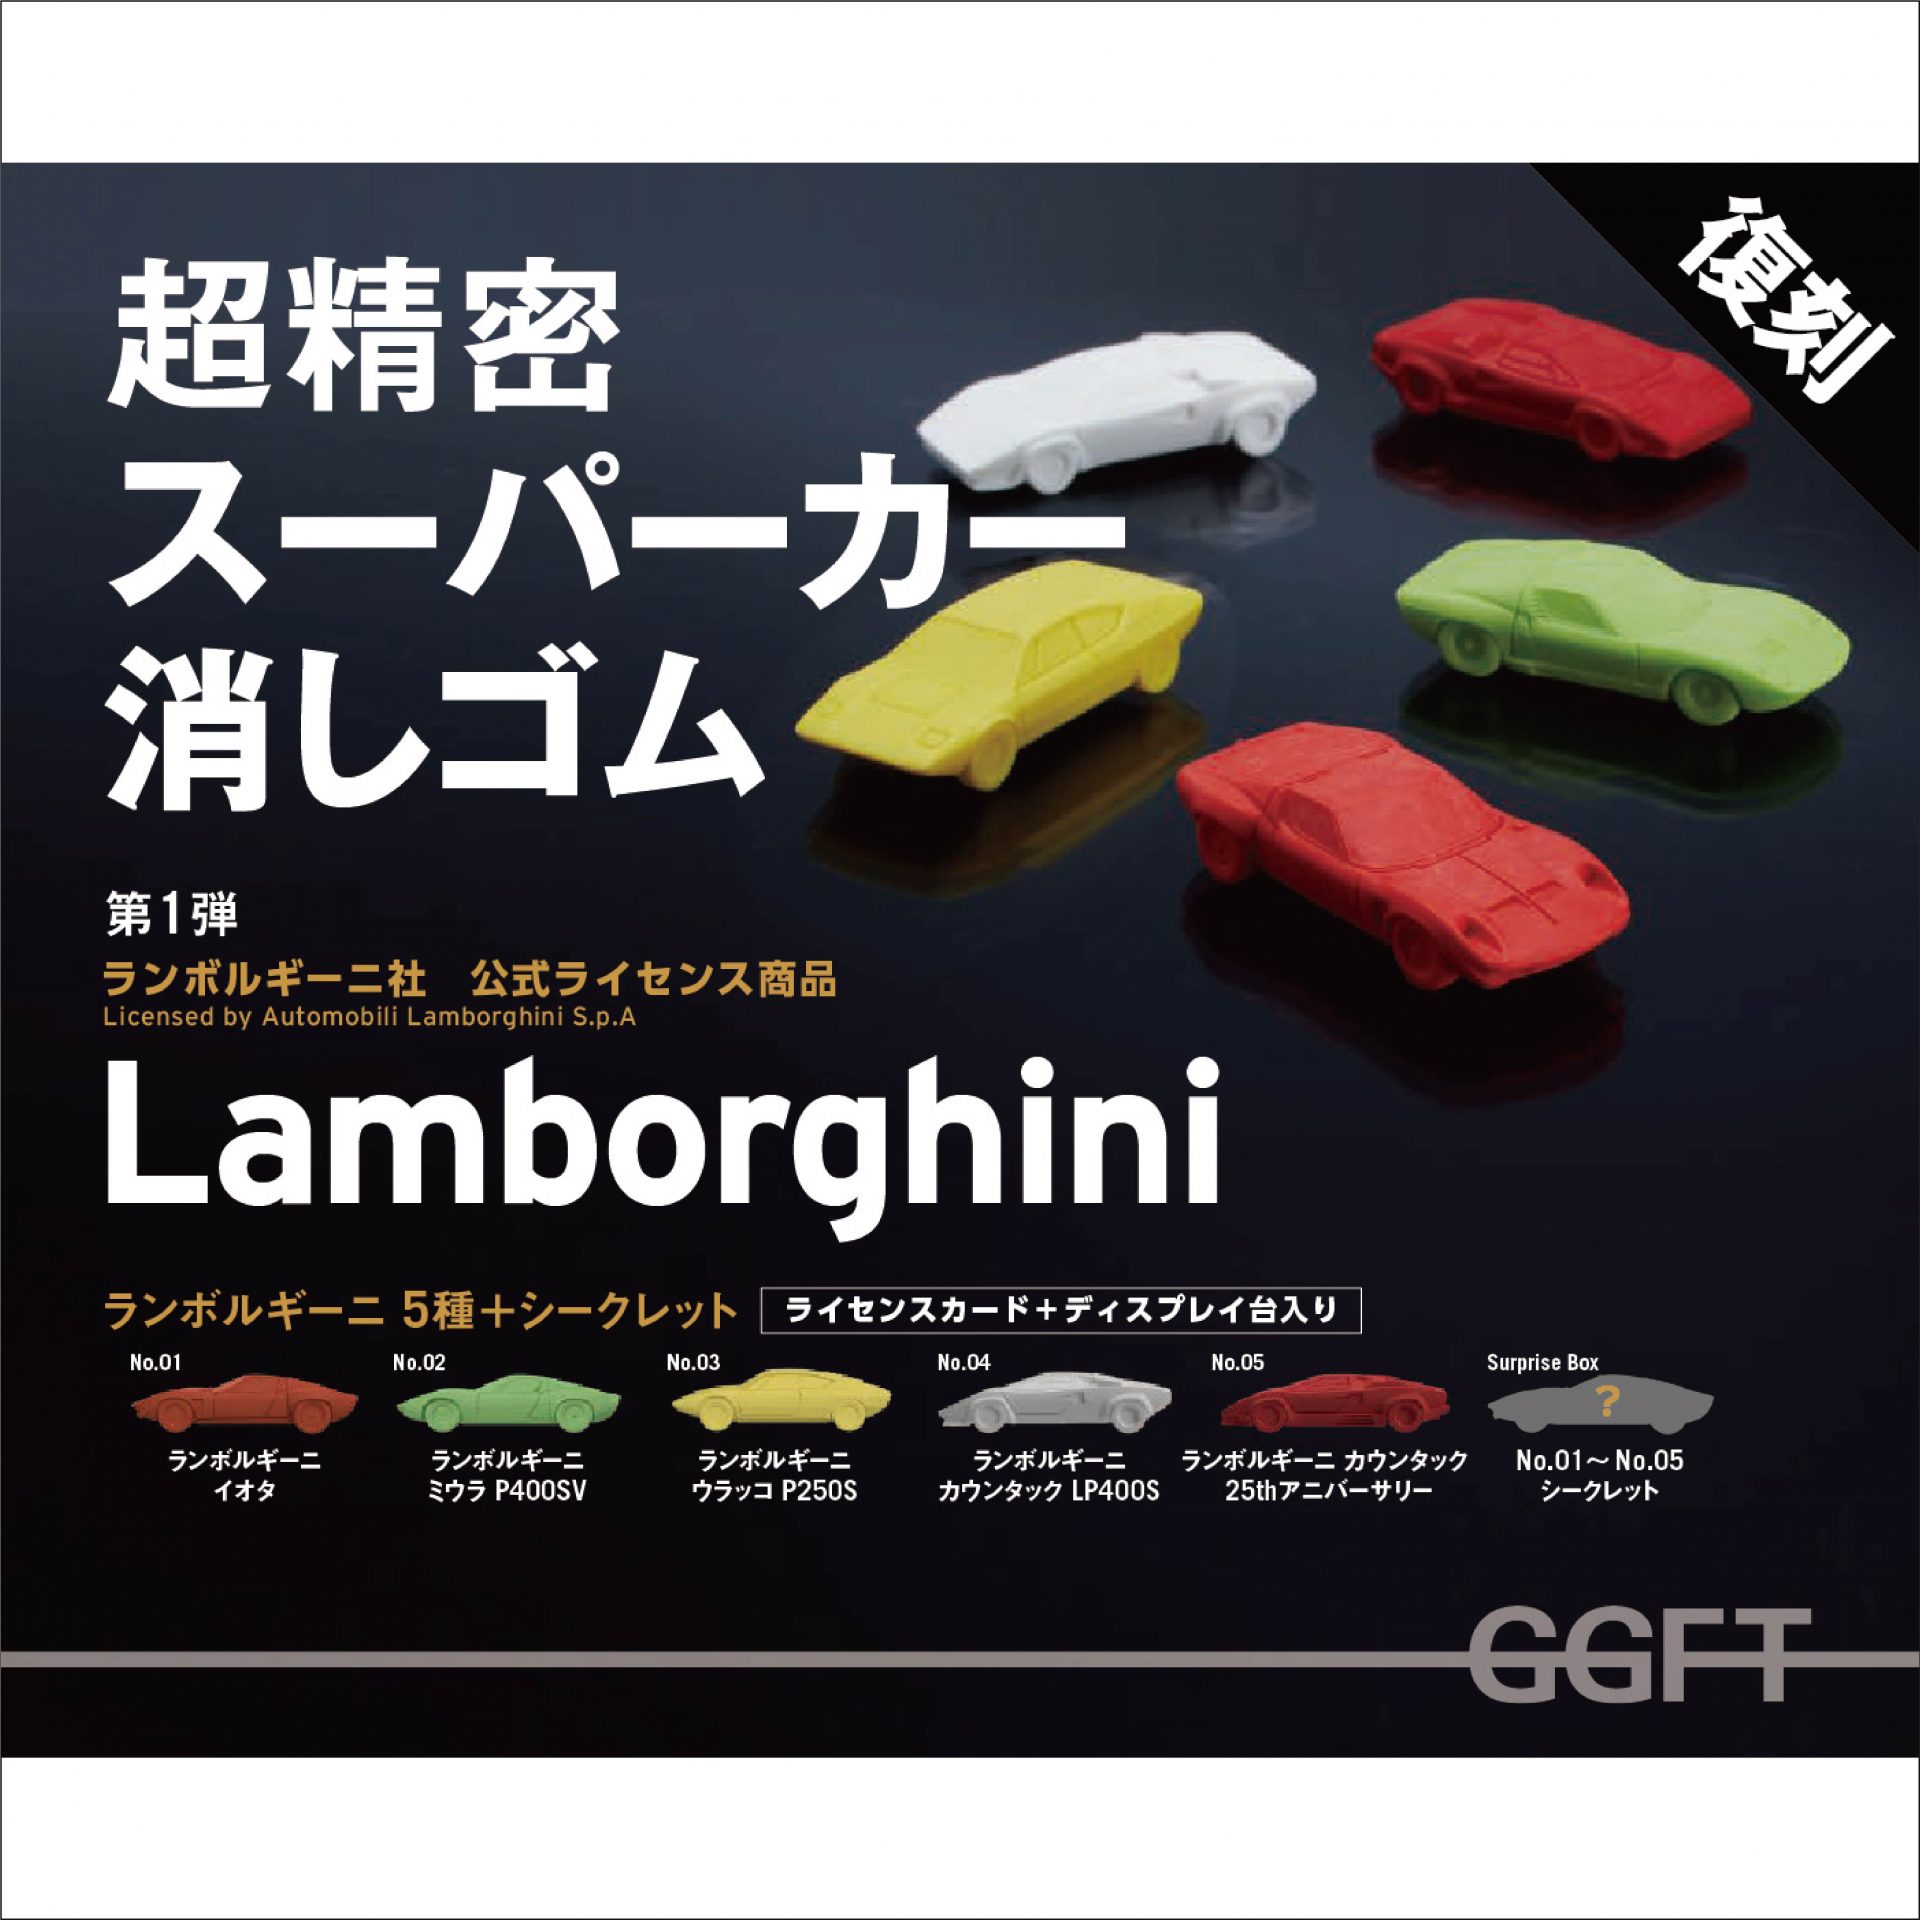 日本から世界へ！ 復刻版『スーパーカー消しゴム』が有名自動車 